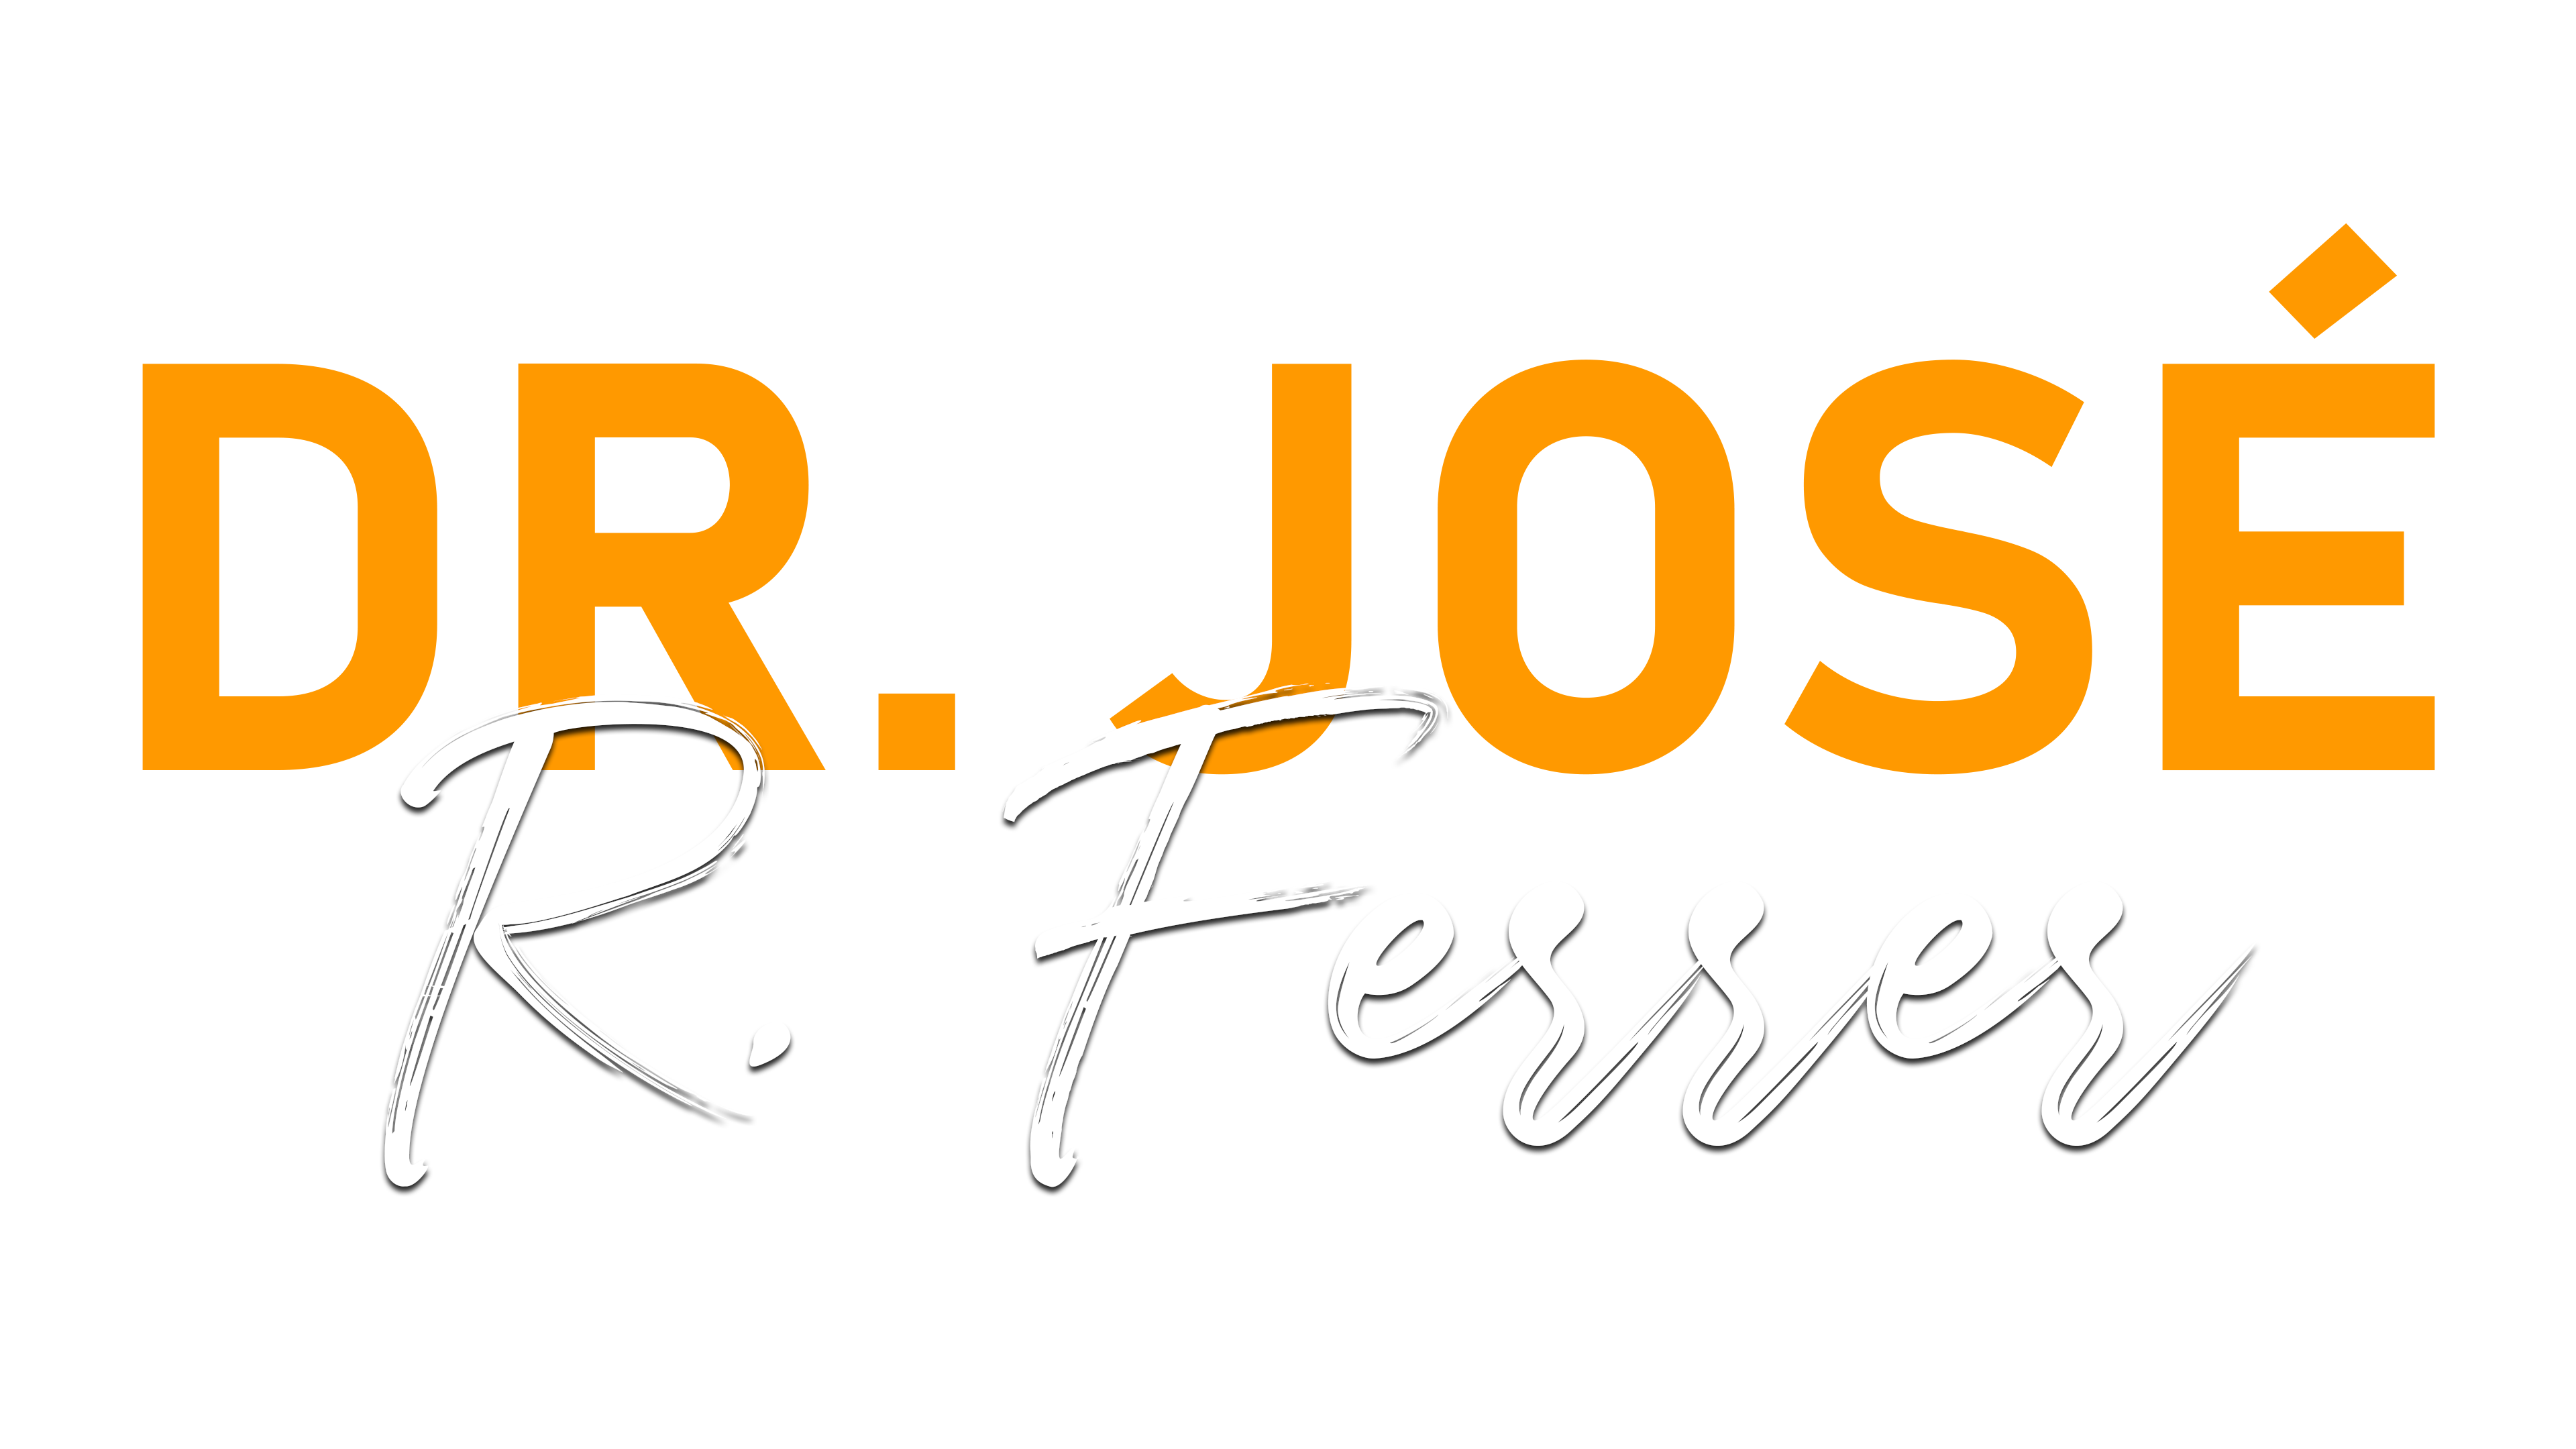 Dr. Jose Ferrer